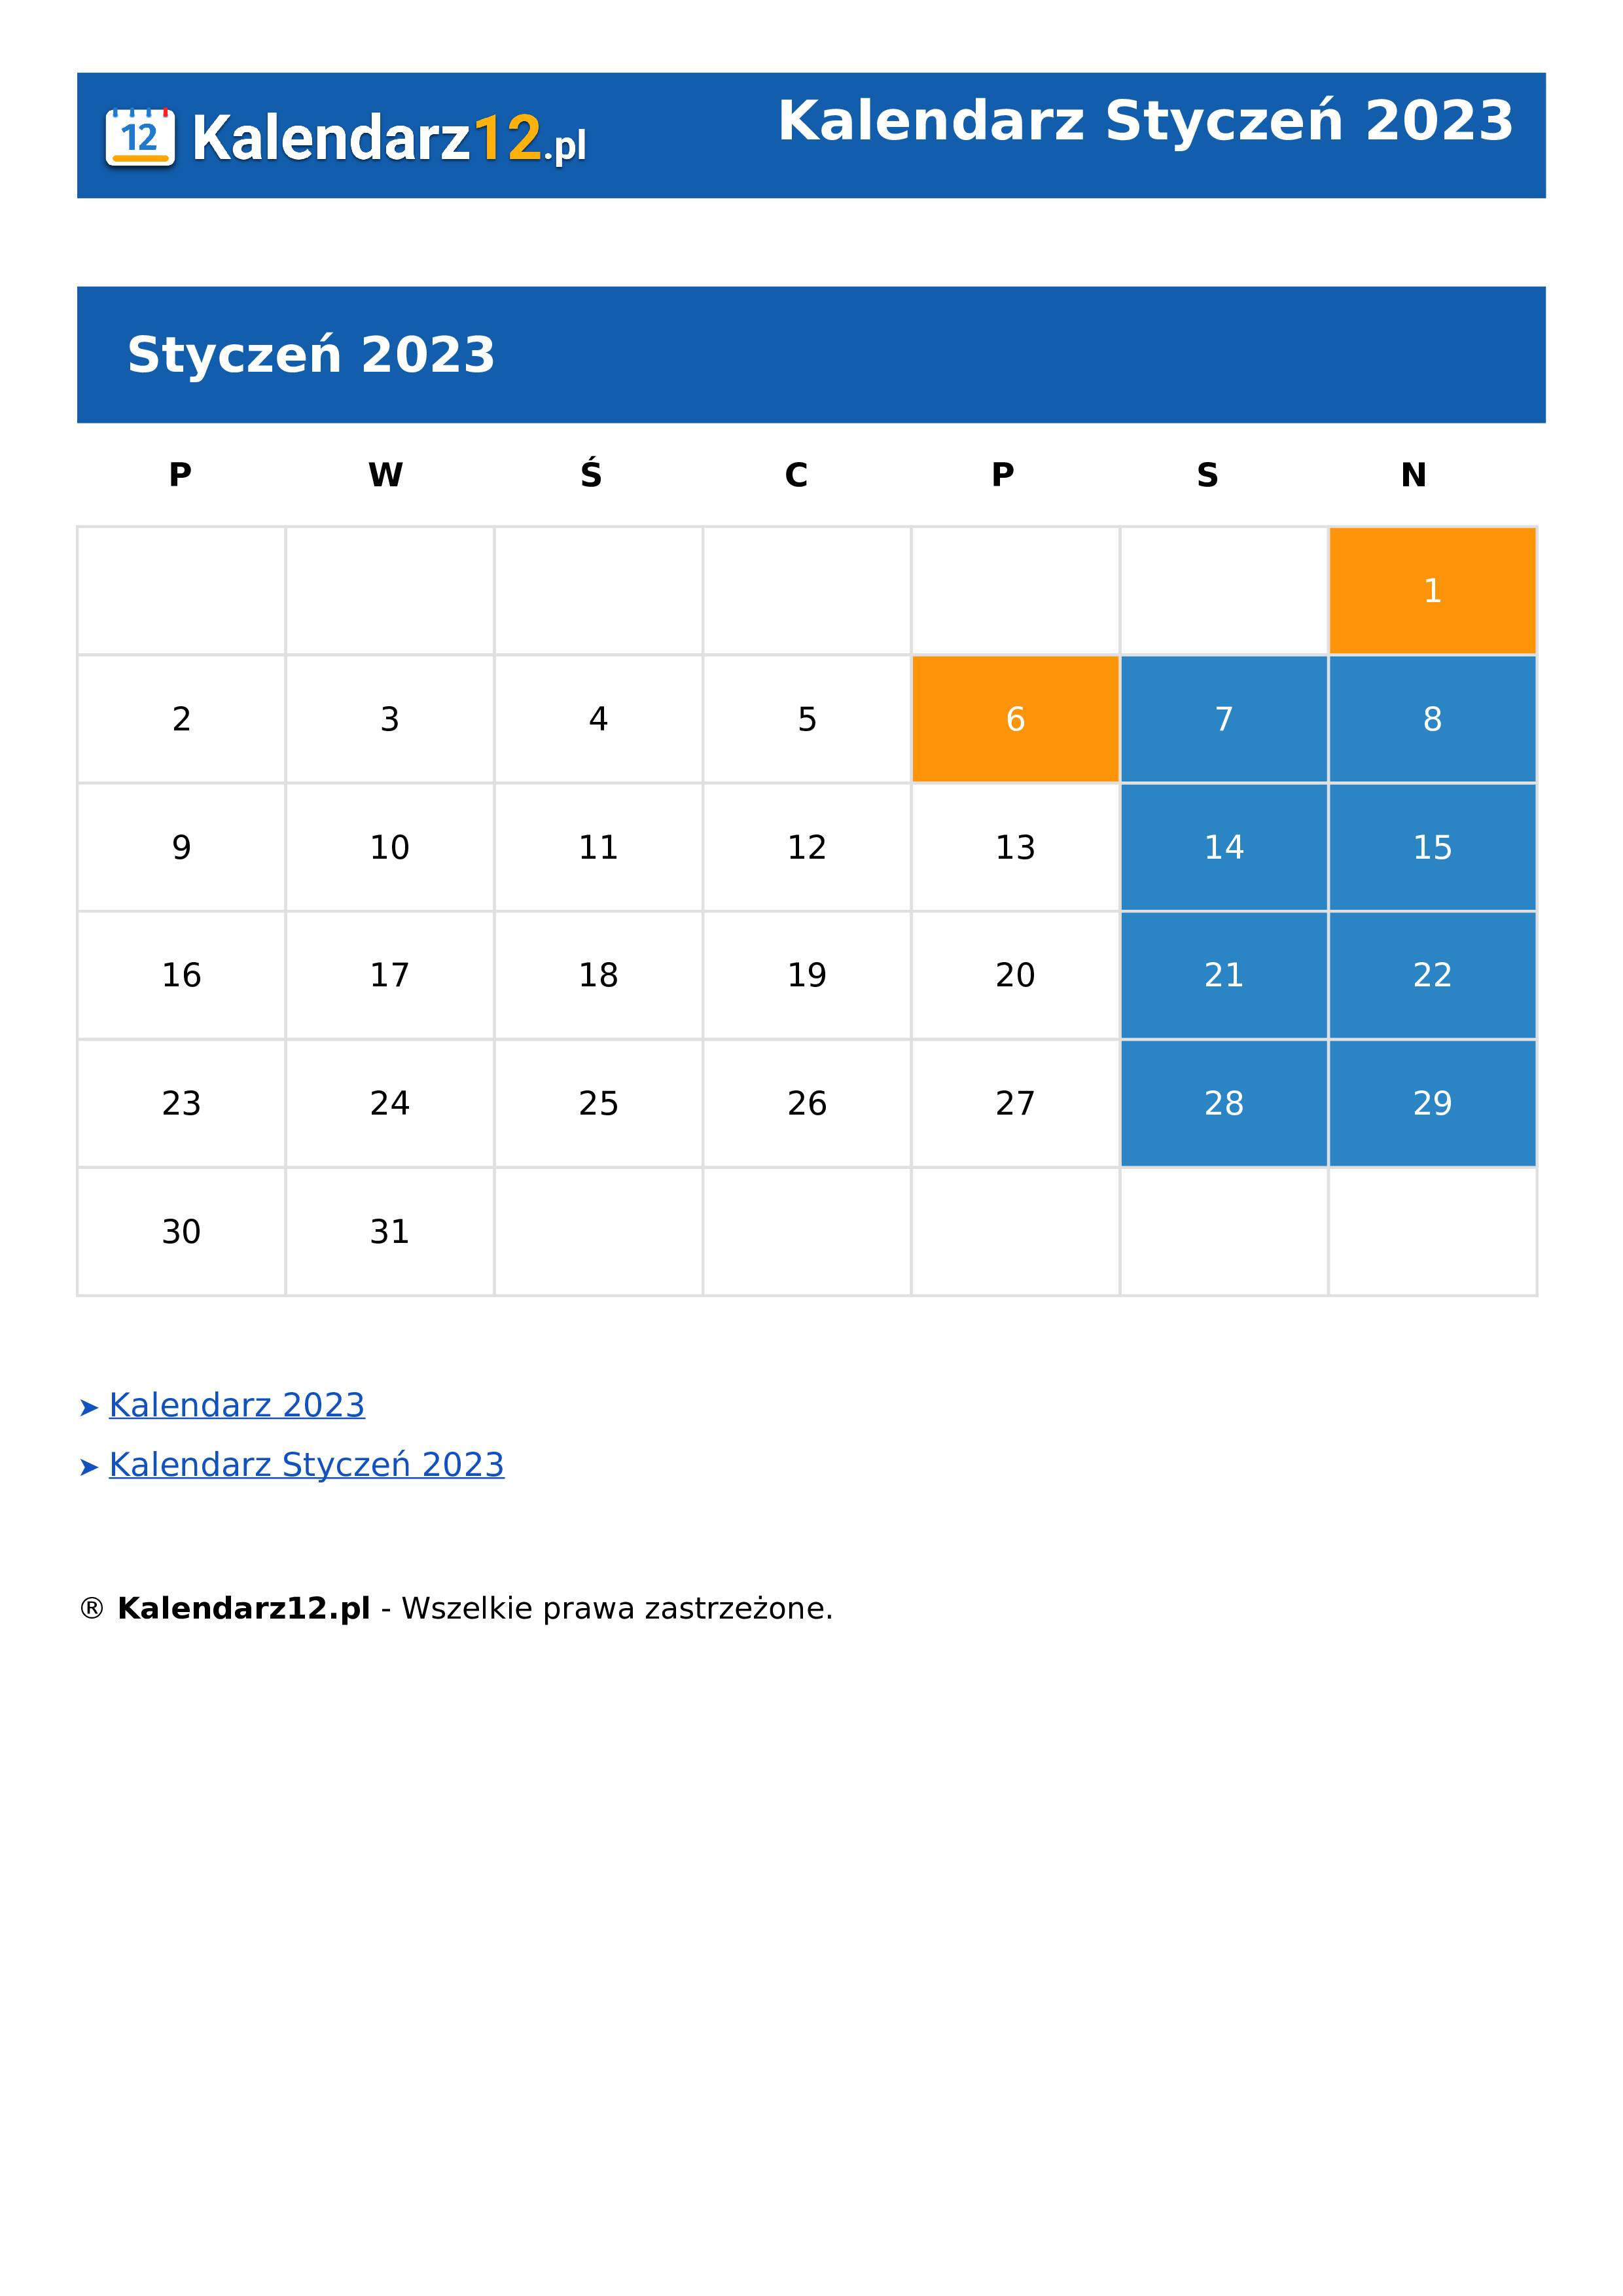 Calendar Styczeń 2023